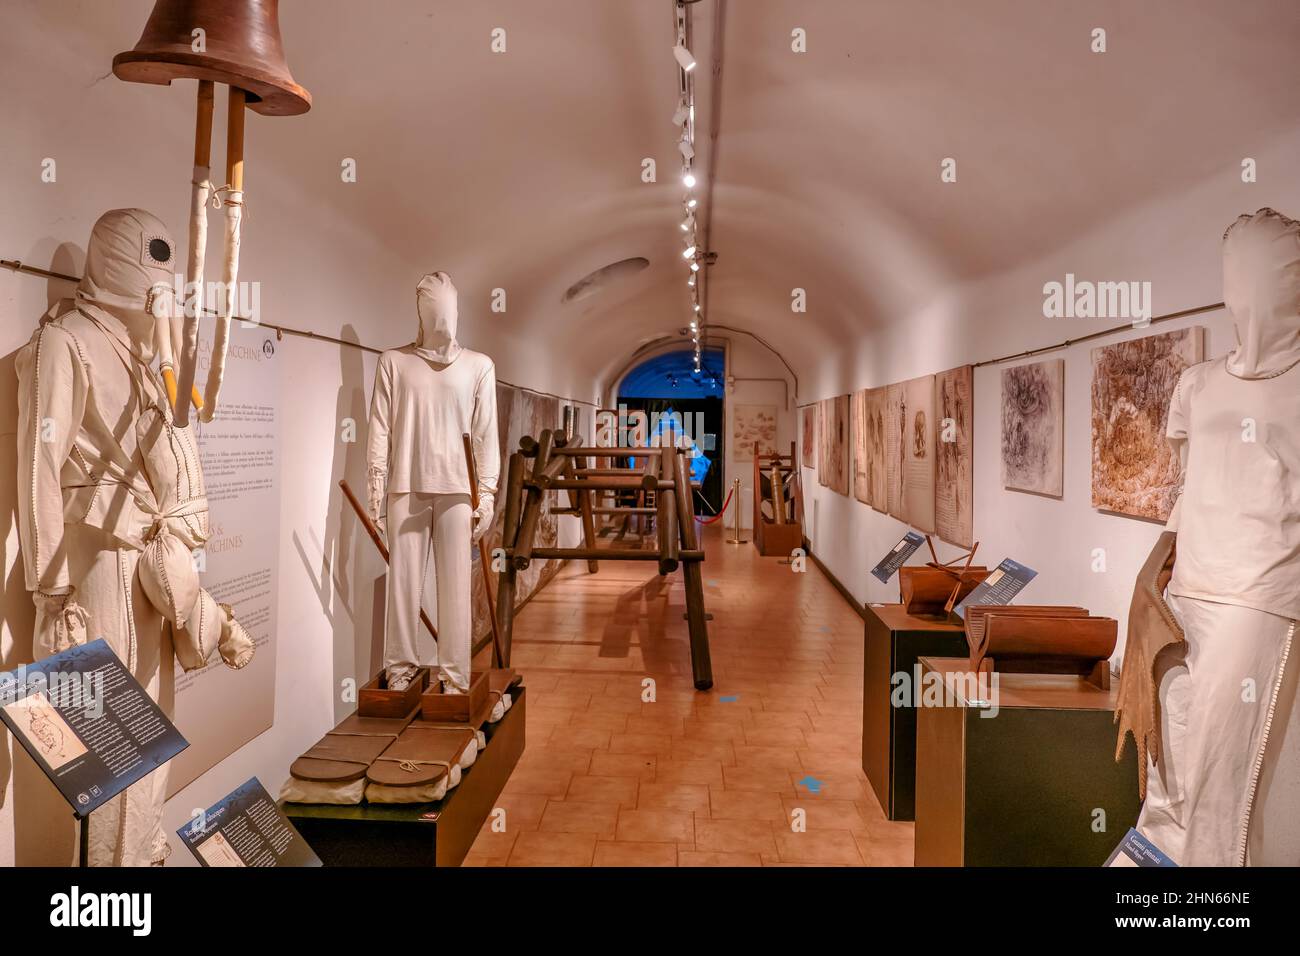 Museum Leonardo Da Vinci interior at Piazza del Popolo in Rome, Italy. Stock Photo